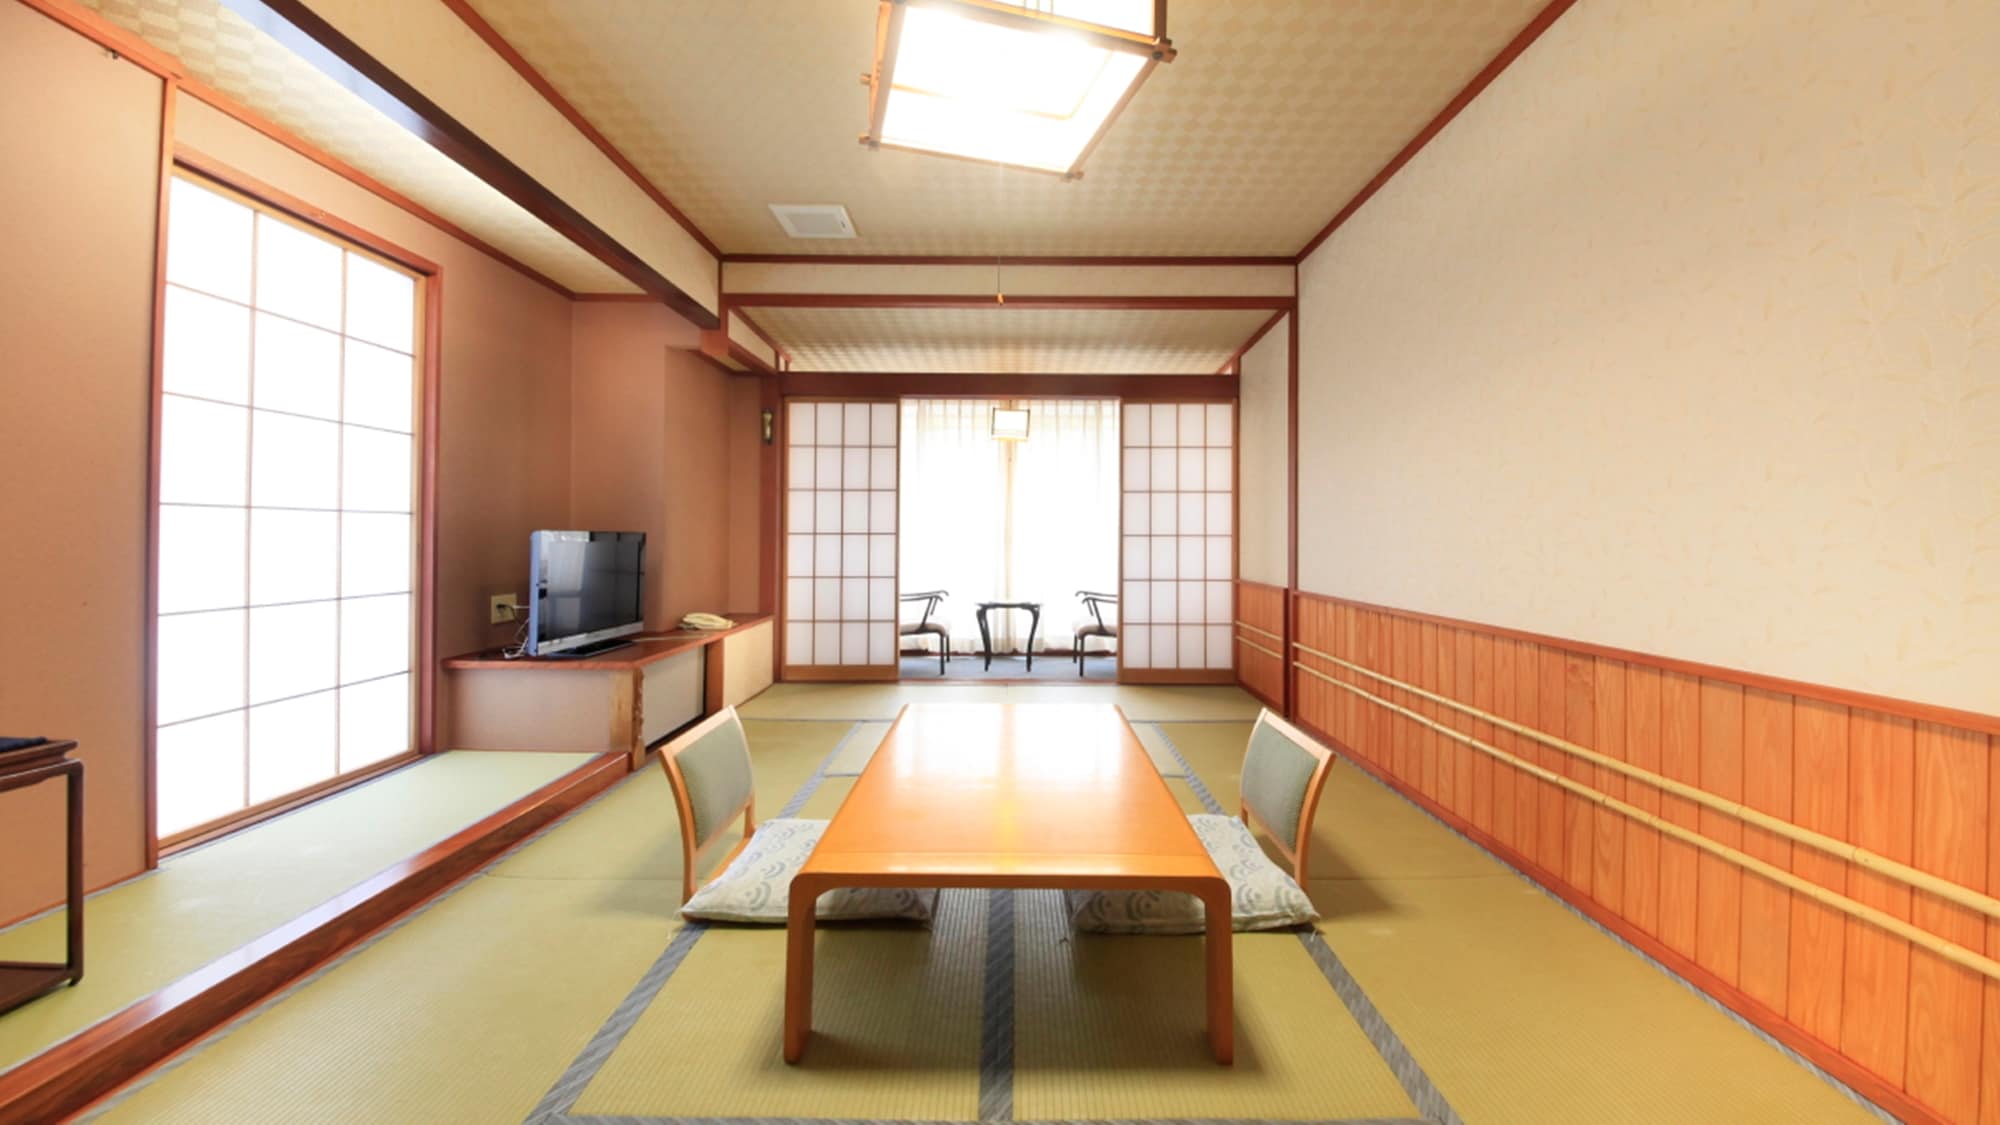 [Suasana tenang] Kamar tamu bergaya Jepang (non-merokok) * Contoh / Silakan menghabiskan waktu santai.